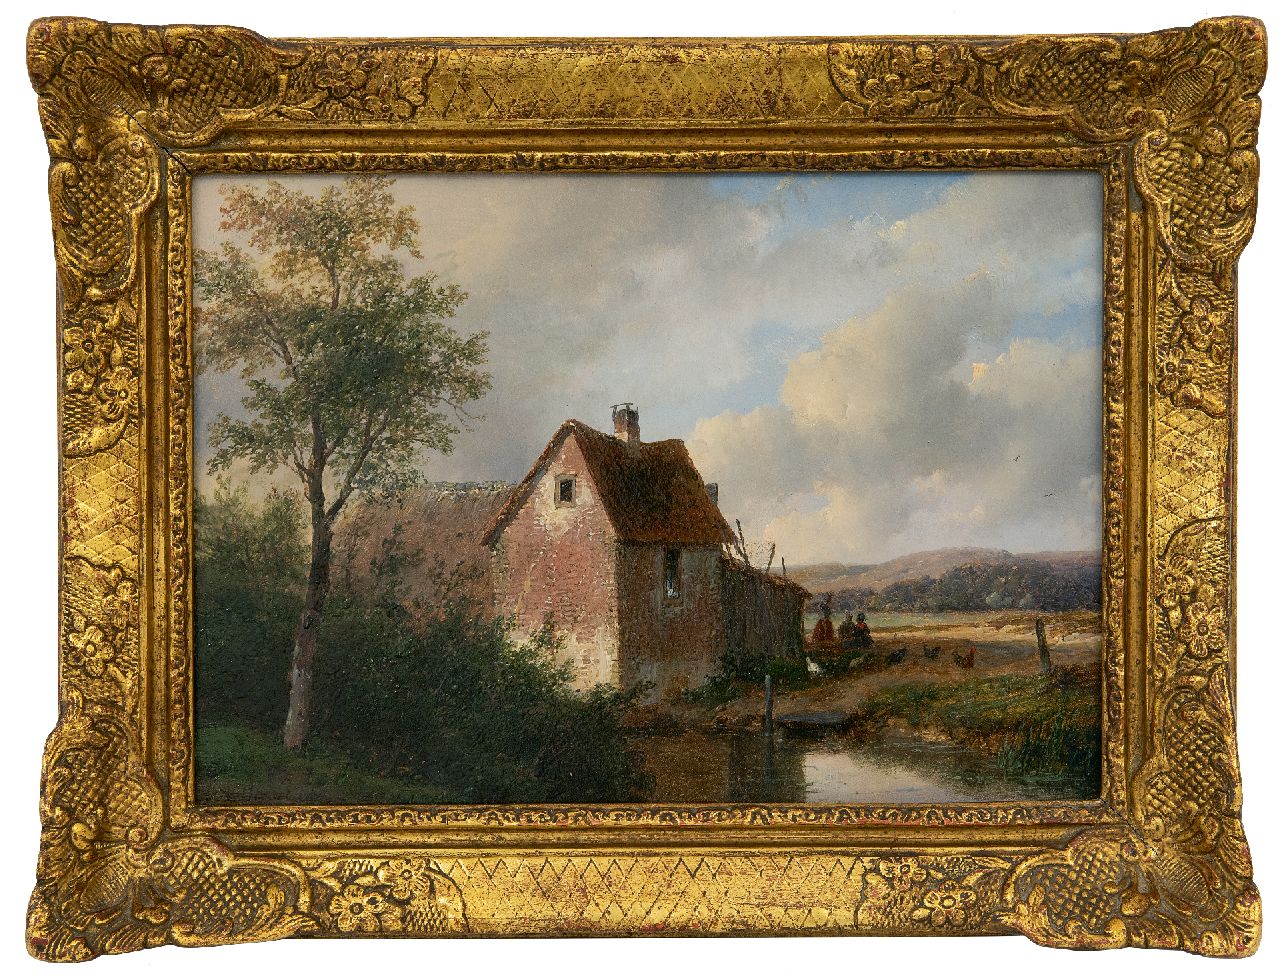 Schelfhout A.  | Andreas Schelfhout, Landschap met boerderij, olieverf op paneel 20,5 x 28,5 cm, gesigneerd linksonder en gedateerd 1866